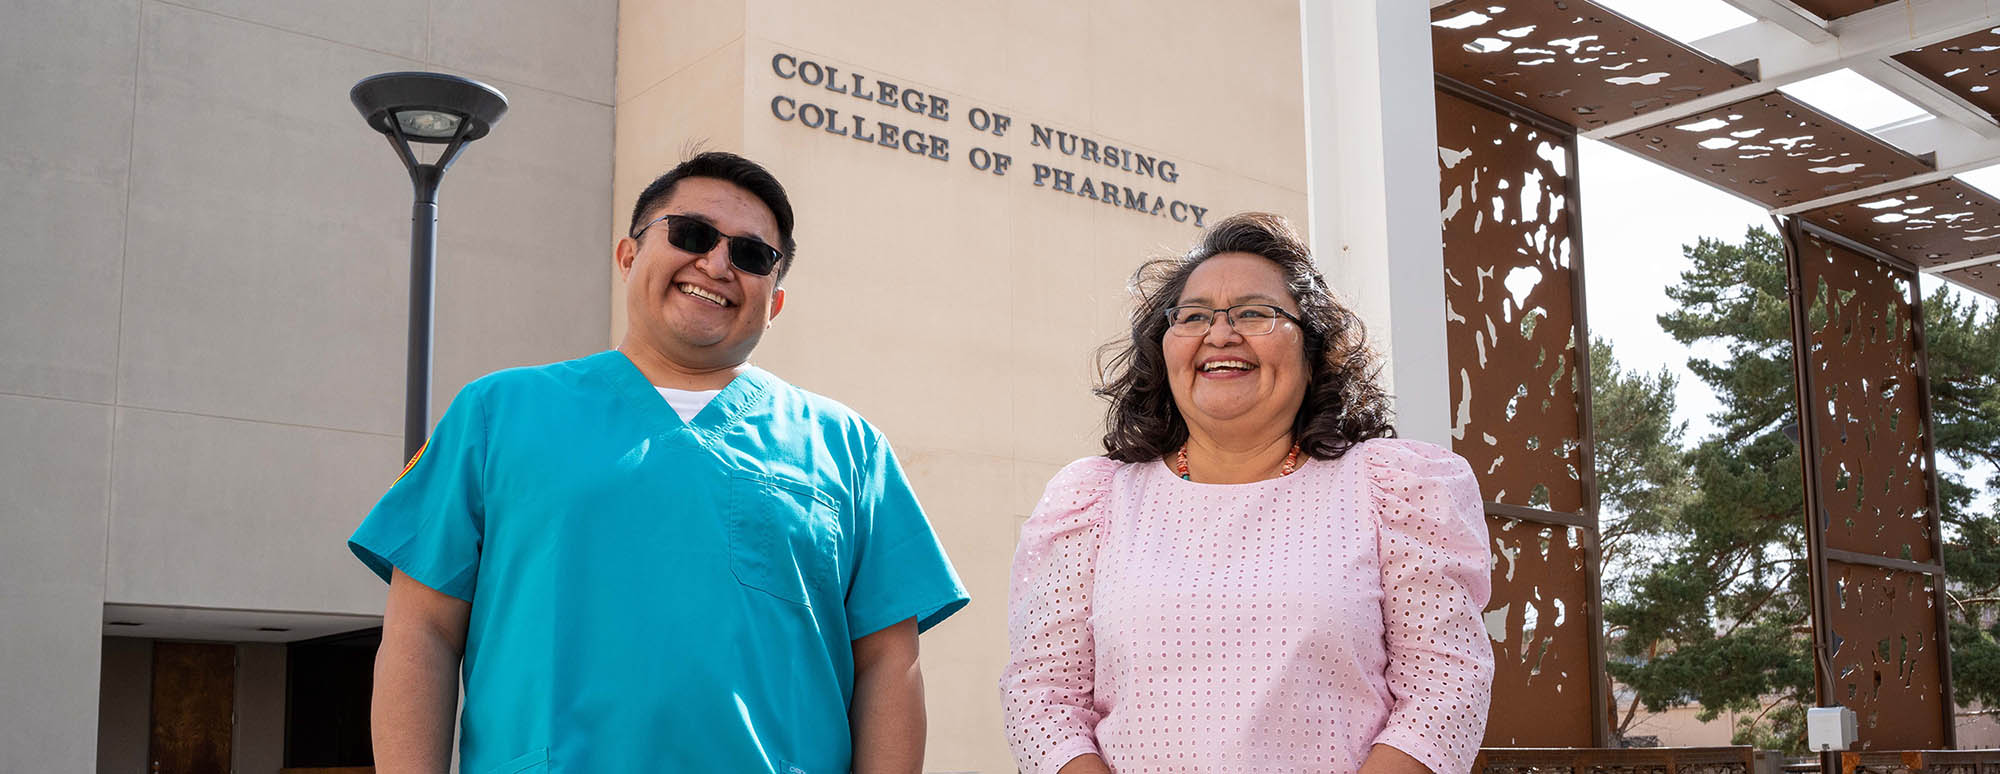 Brian Wyaco et Melissa Wyaco devant le bâtiment du College of Nursing souriant ensemble